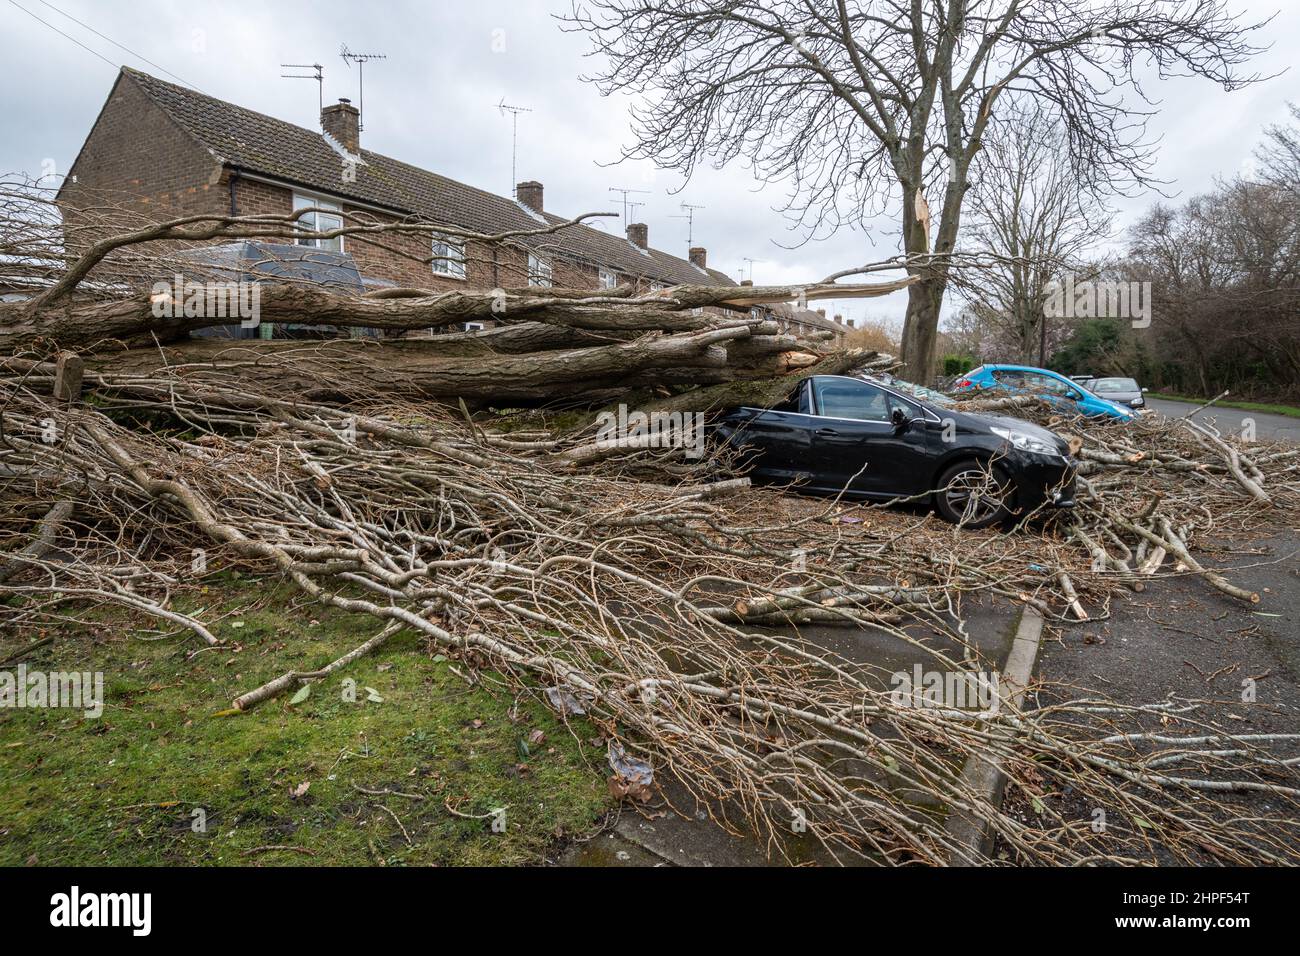 Febrero 2022, Storm Eunice Daño. Un coche aparcado fuera de las casas fue aplastado por un gran árbol caído durante la tormenta Eunice en Marrowbrook Lane, Farnborough, Hampshire, Inglaterra, Reino Unido. La velocidad de viento más alta jamás vista en Inglaterra de 122 mph fue registrada durante la tormenta que ocurrió el 18th de febrero de 2022, una de las tres tormentas nombradas en 5 días. El clima extremo está relacionado con la crisis del cambio climático. Foto de stock